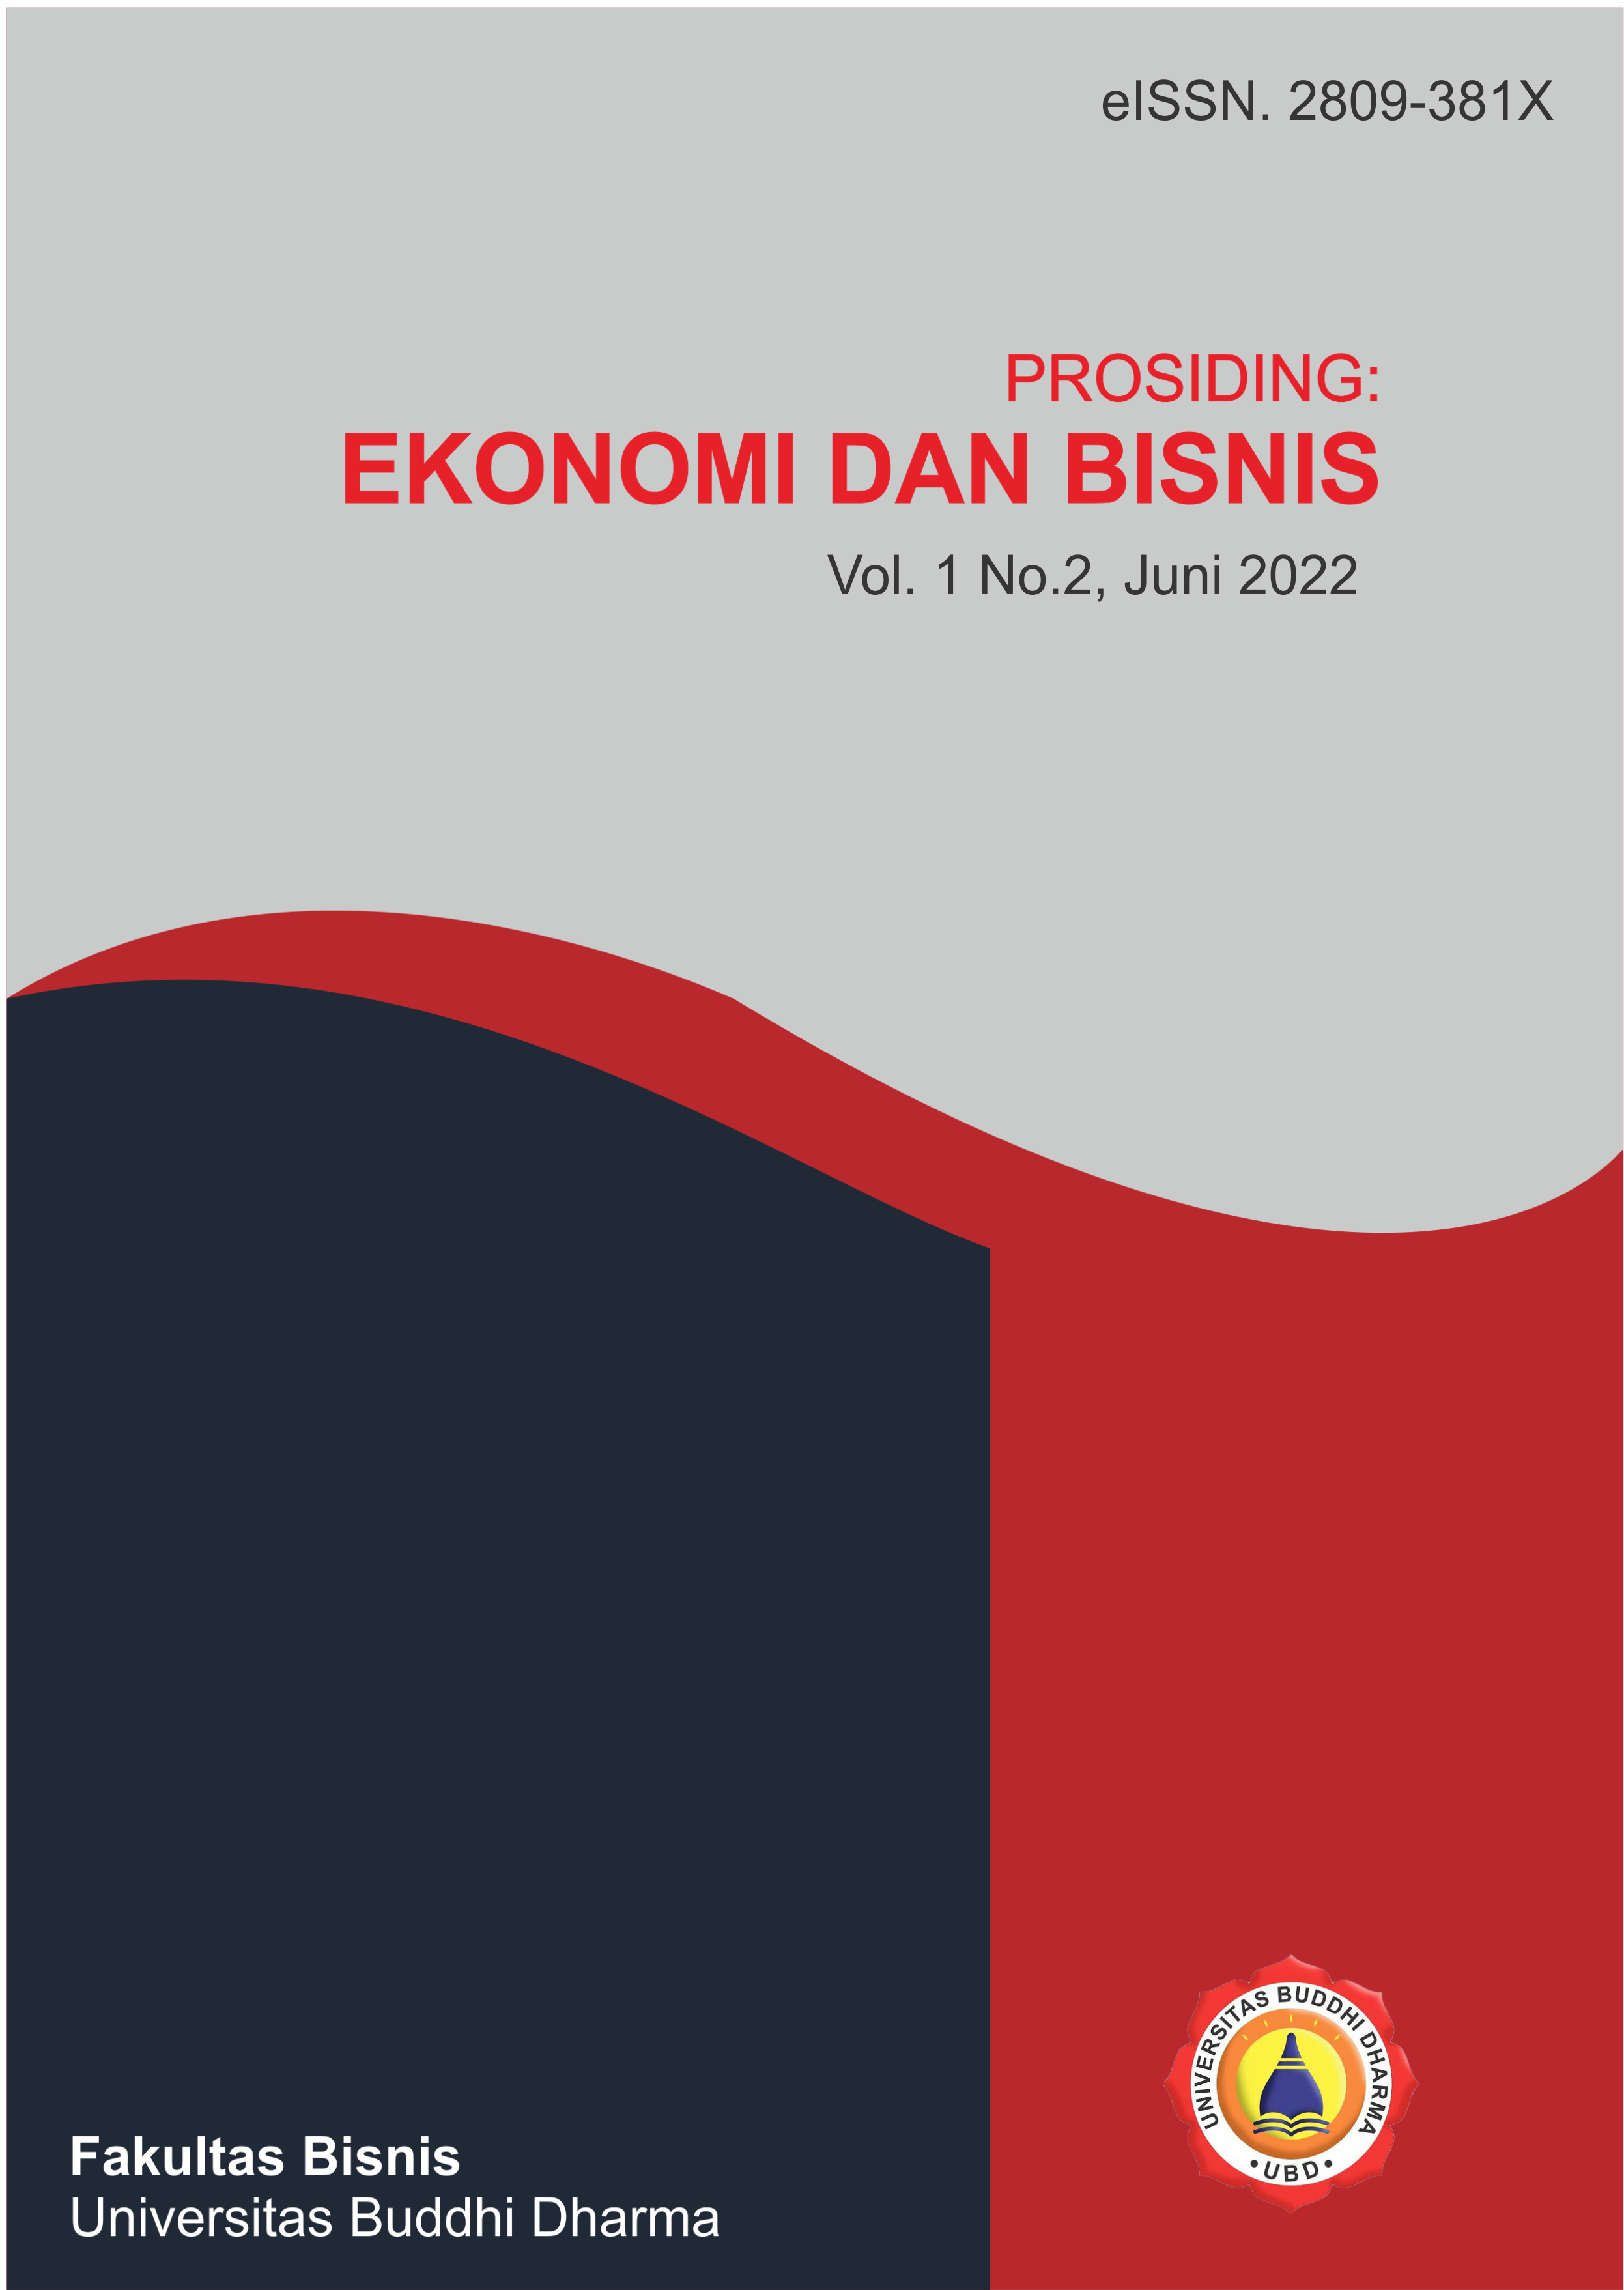 					View Vol. 2 No. 1 (2022): Prosiding: Ekonomi dan Bisnis
				